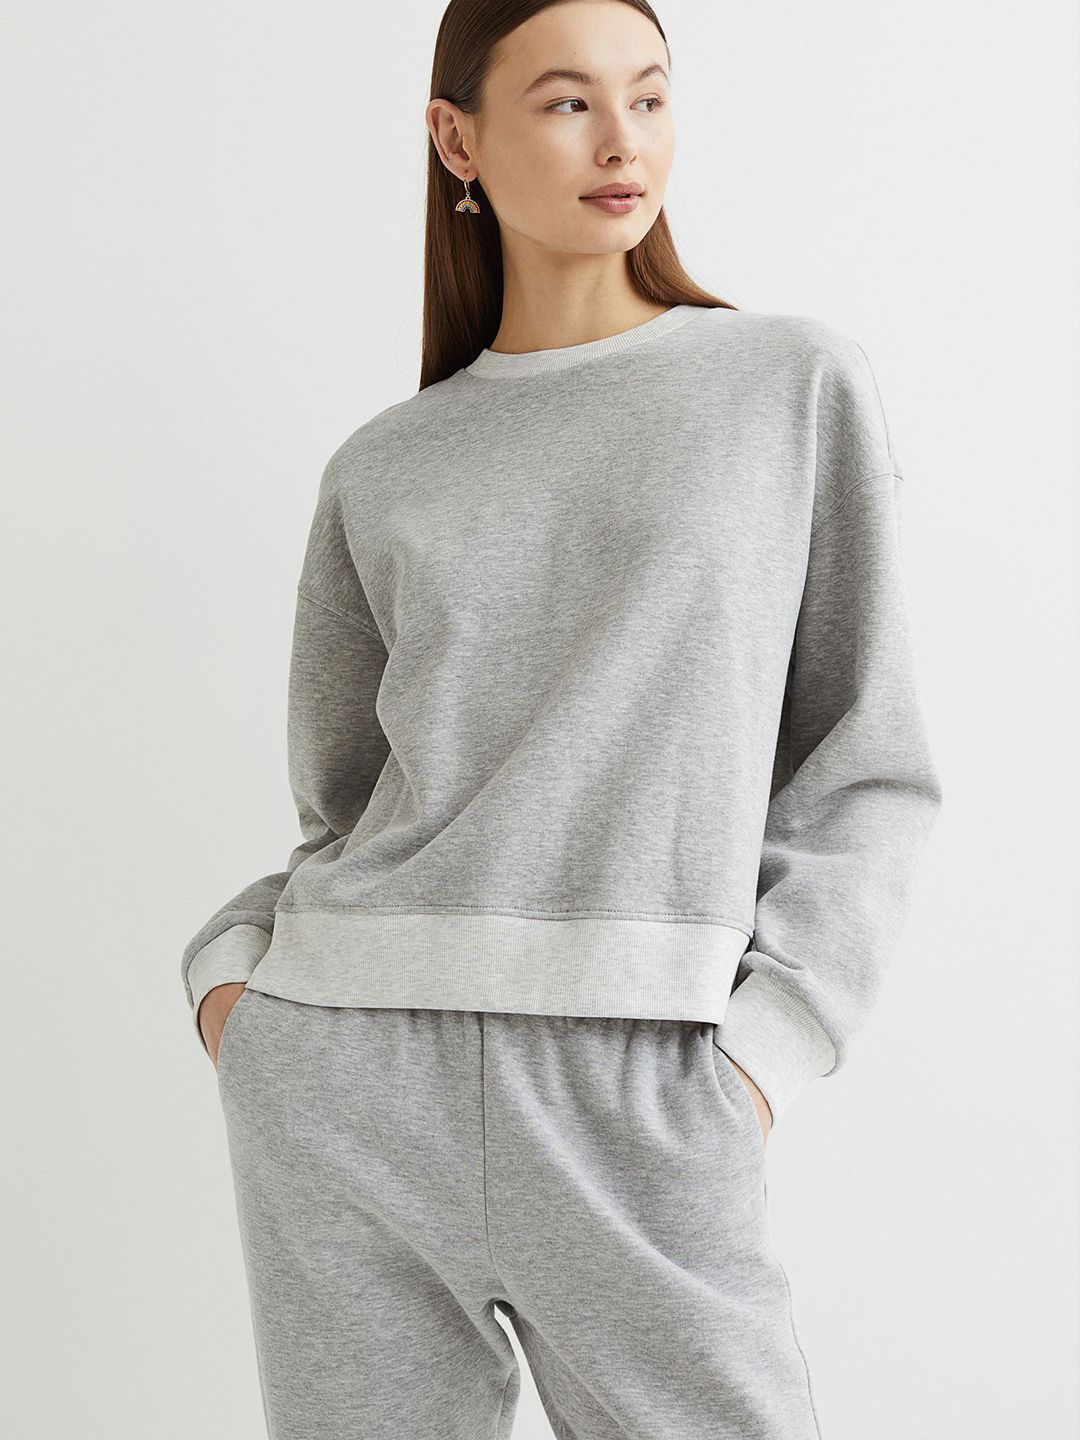 H&M Women Grey Solid Sweatshirt Price in India